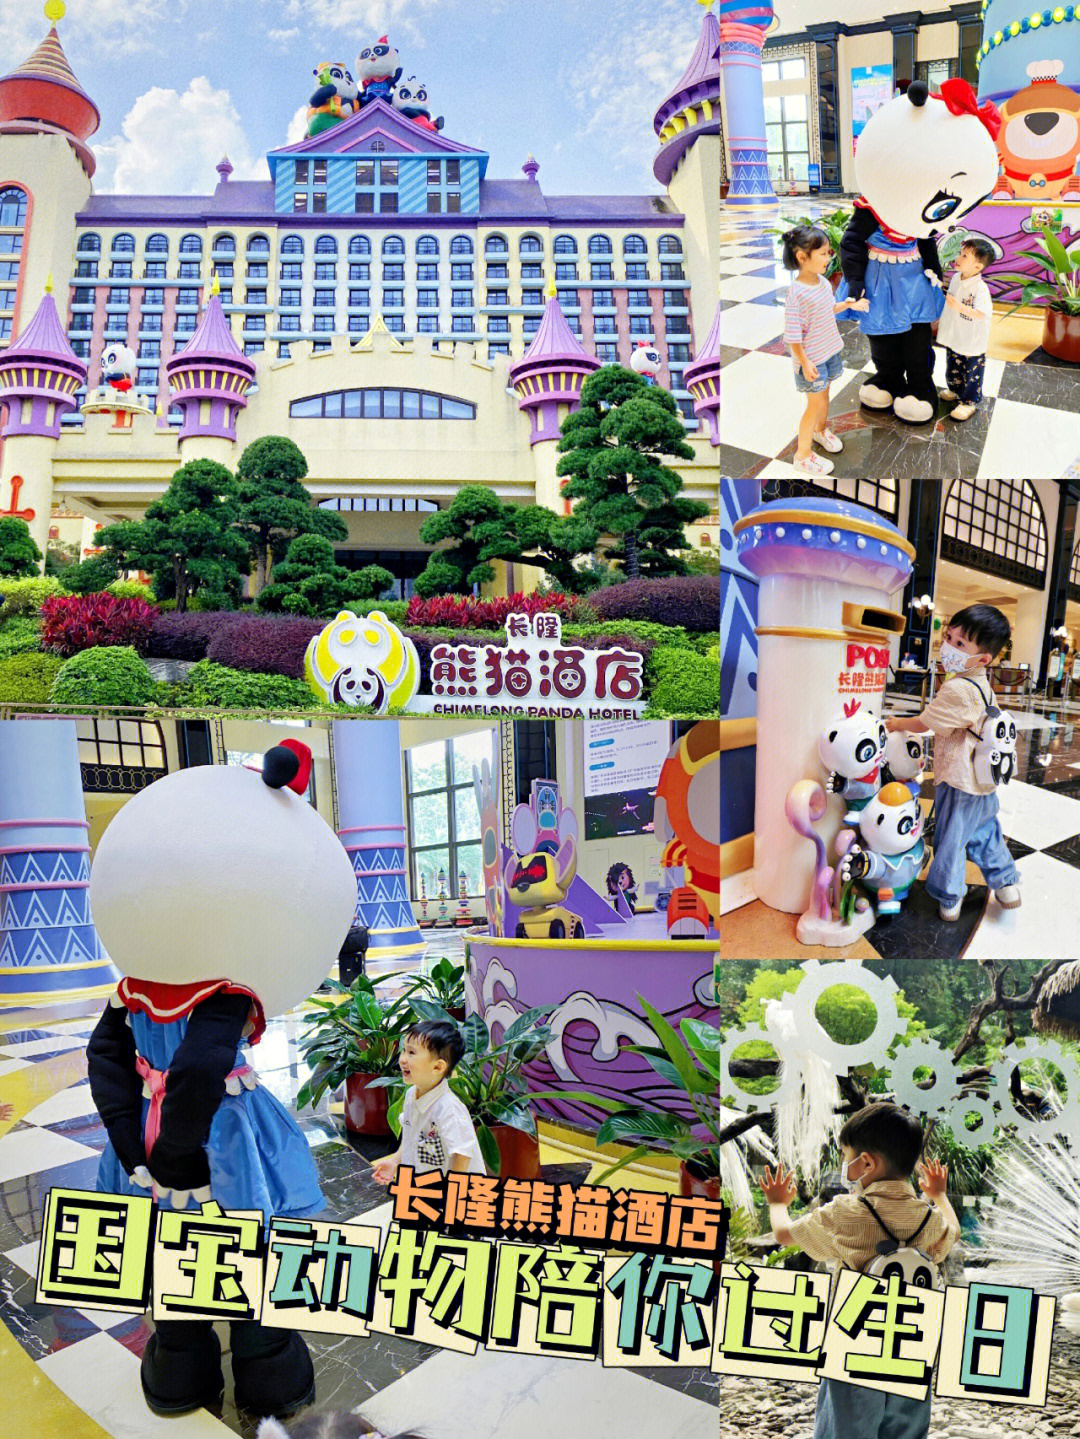 广州长隆熊猫酒店攻略图片